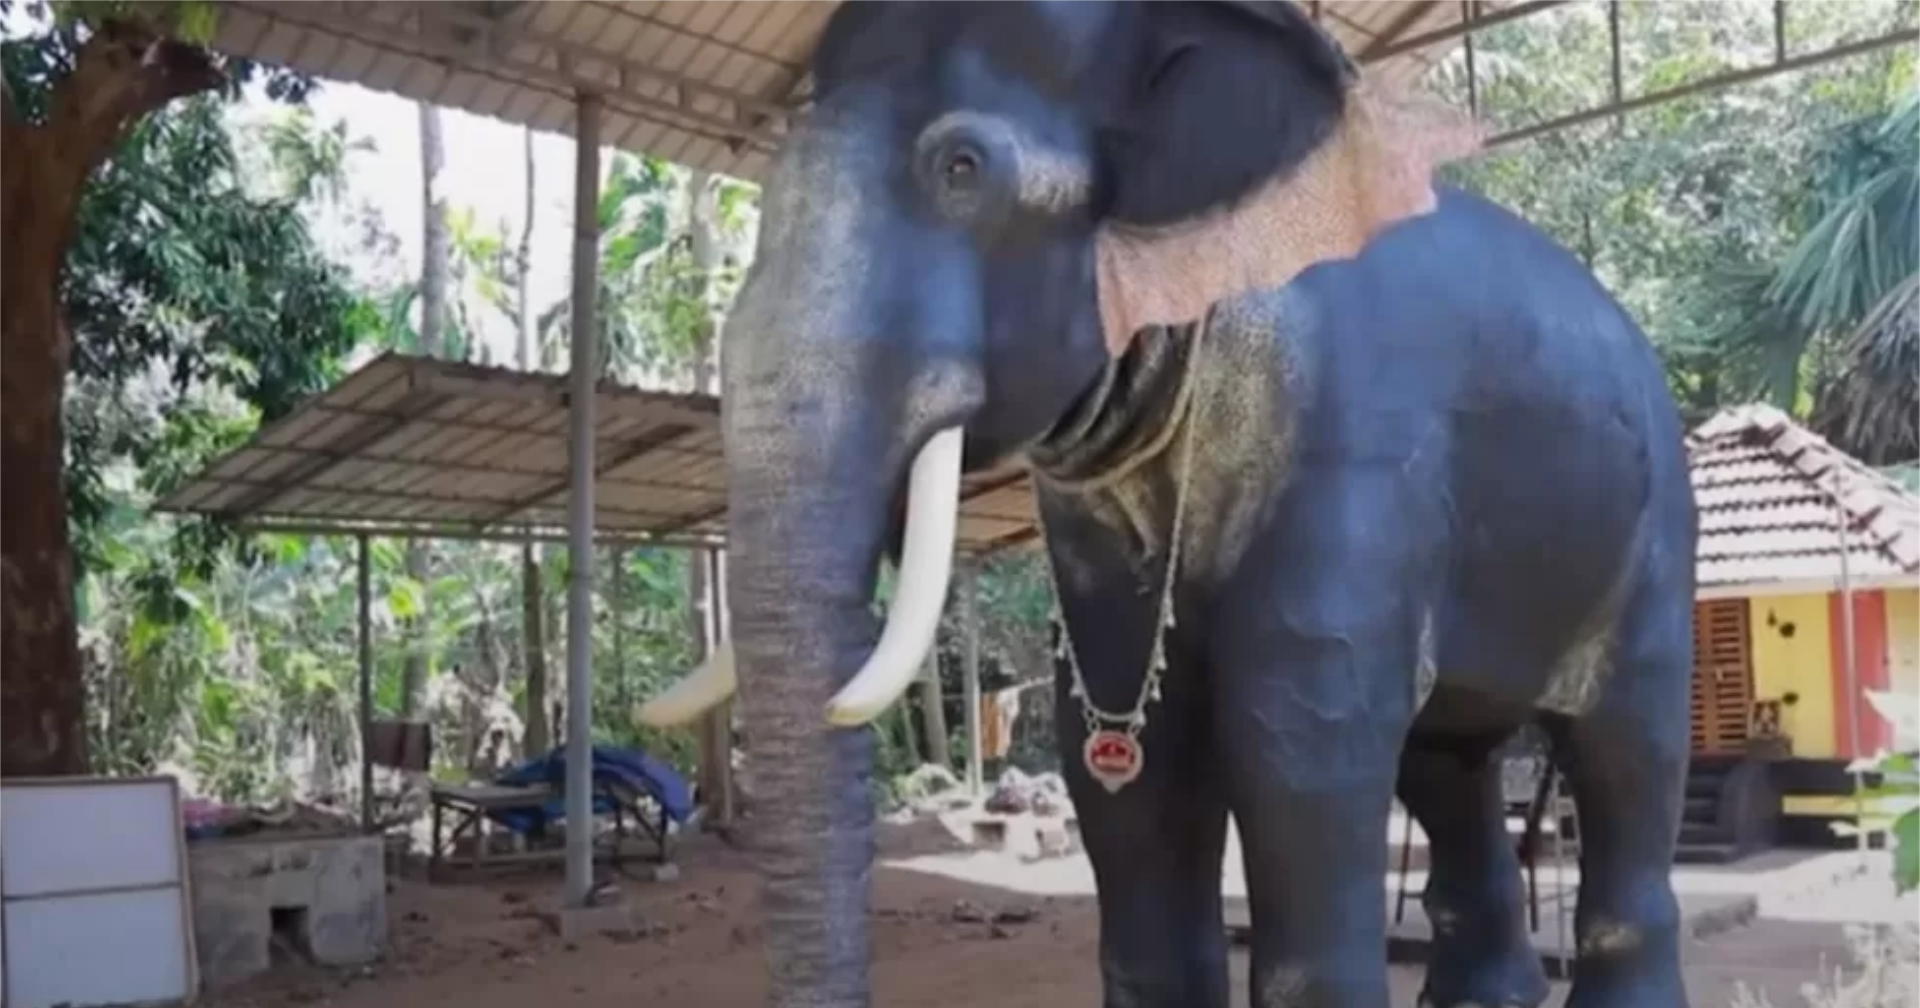 ไอเดียดี! อินเดียใช้ ‘หุ่นยนต์ช้าง’ ประกอบพิธีกรรมแทนช้างจริง ๆ เพื่อลดการทารุณสัตว์